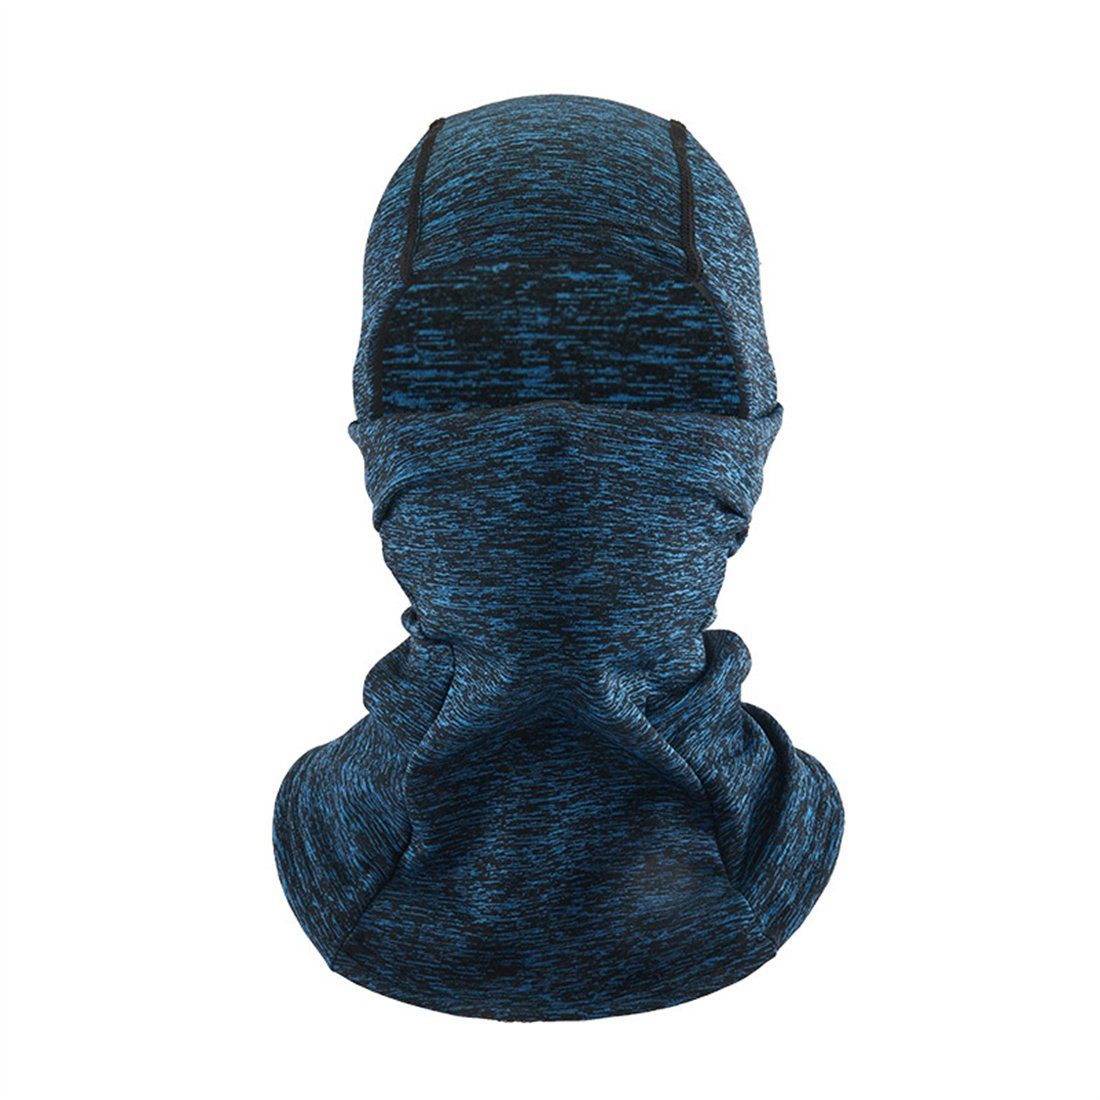 DÖRÖY Sturmhaube Winter unisex Maske, blau Kopfbedeckung, Ski warme kalte Radfahren